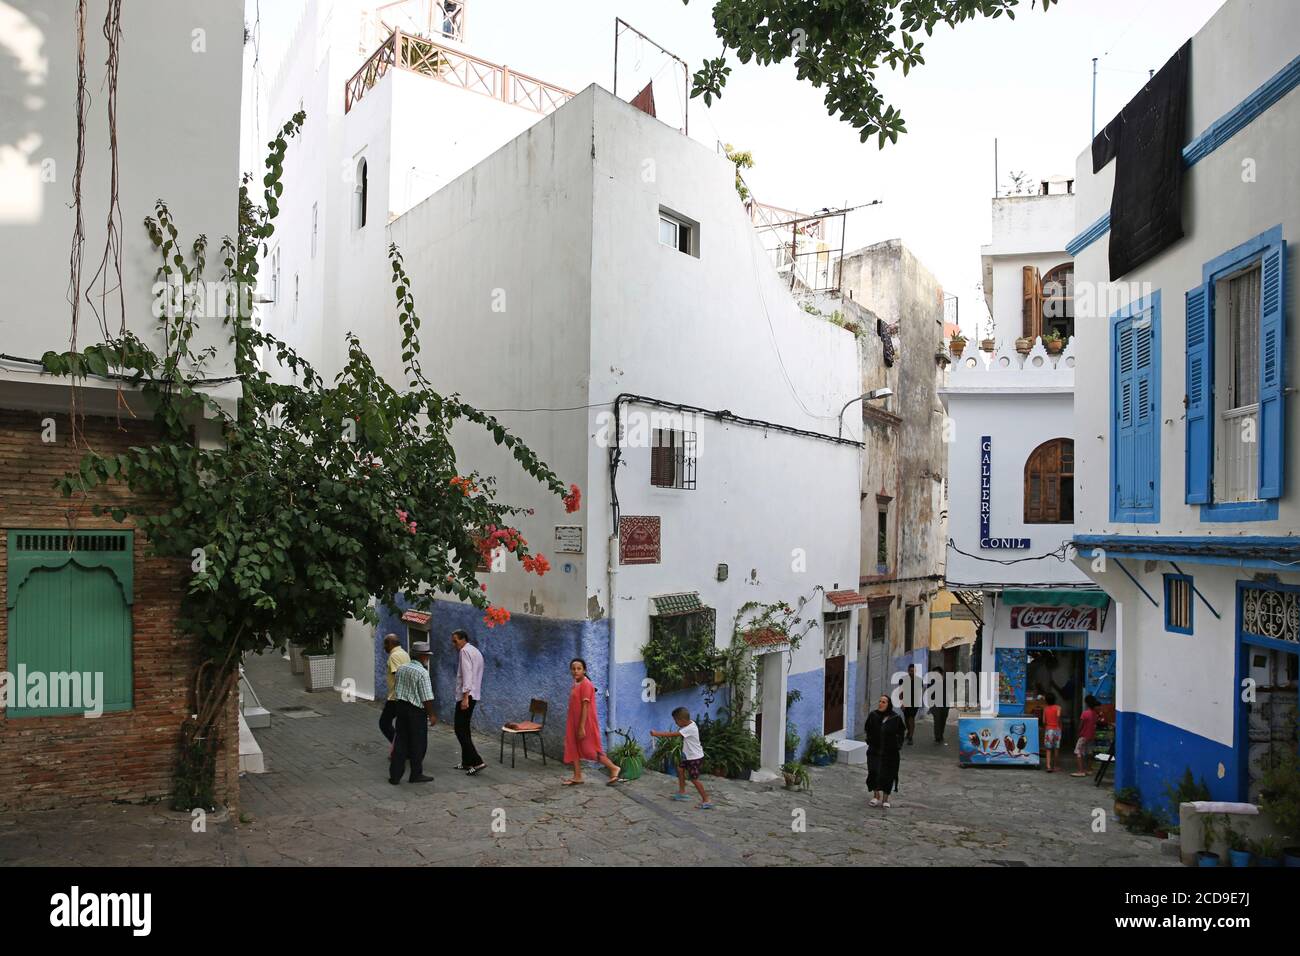 Marocco, Tangeri Tetouan regione, Tangeri, Tangeri nei vicoli della casbah con case bianche Foto Stock